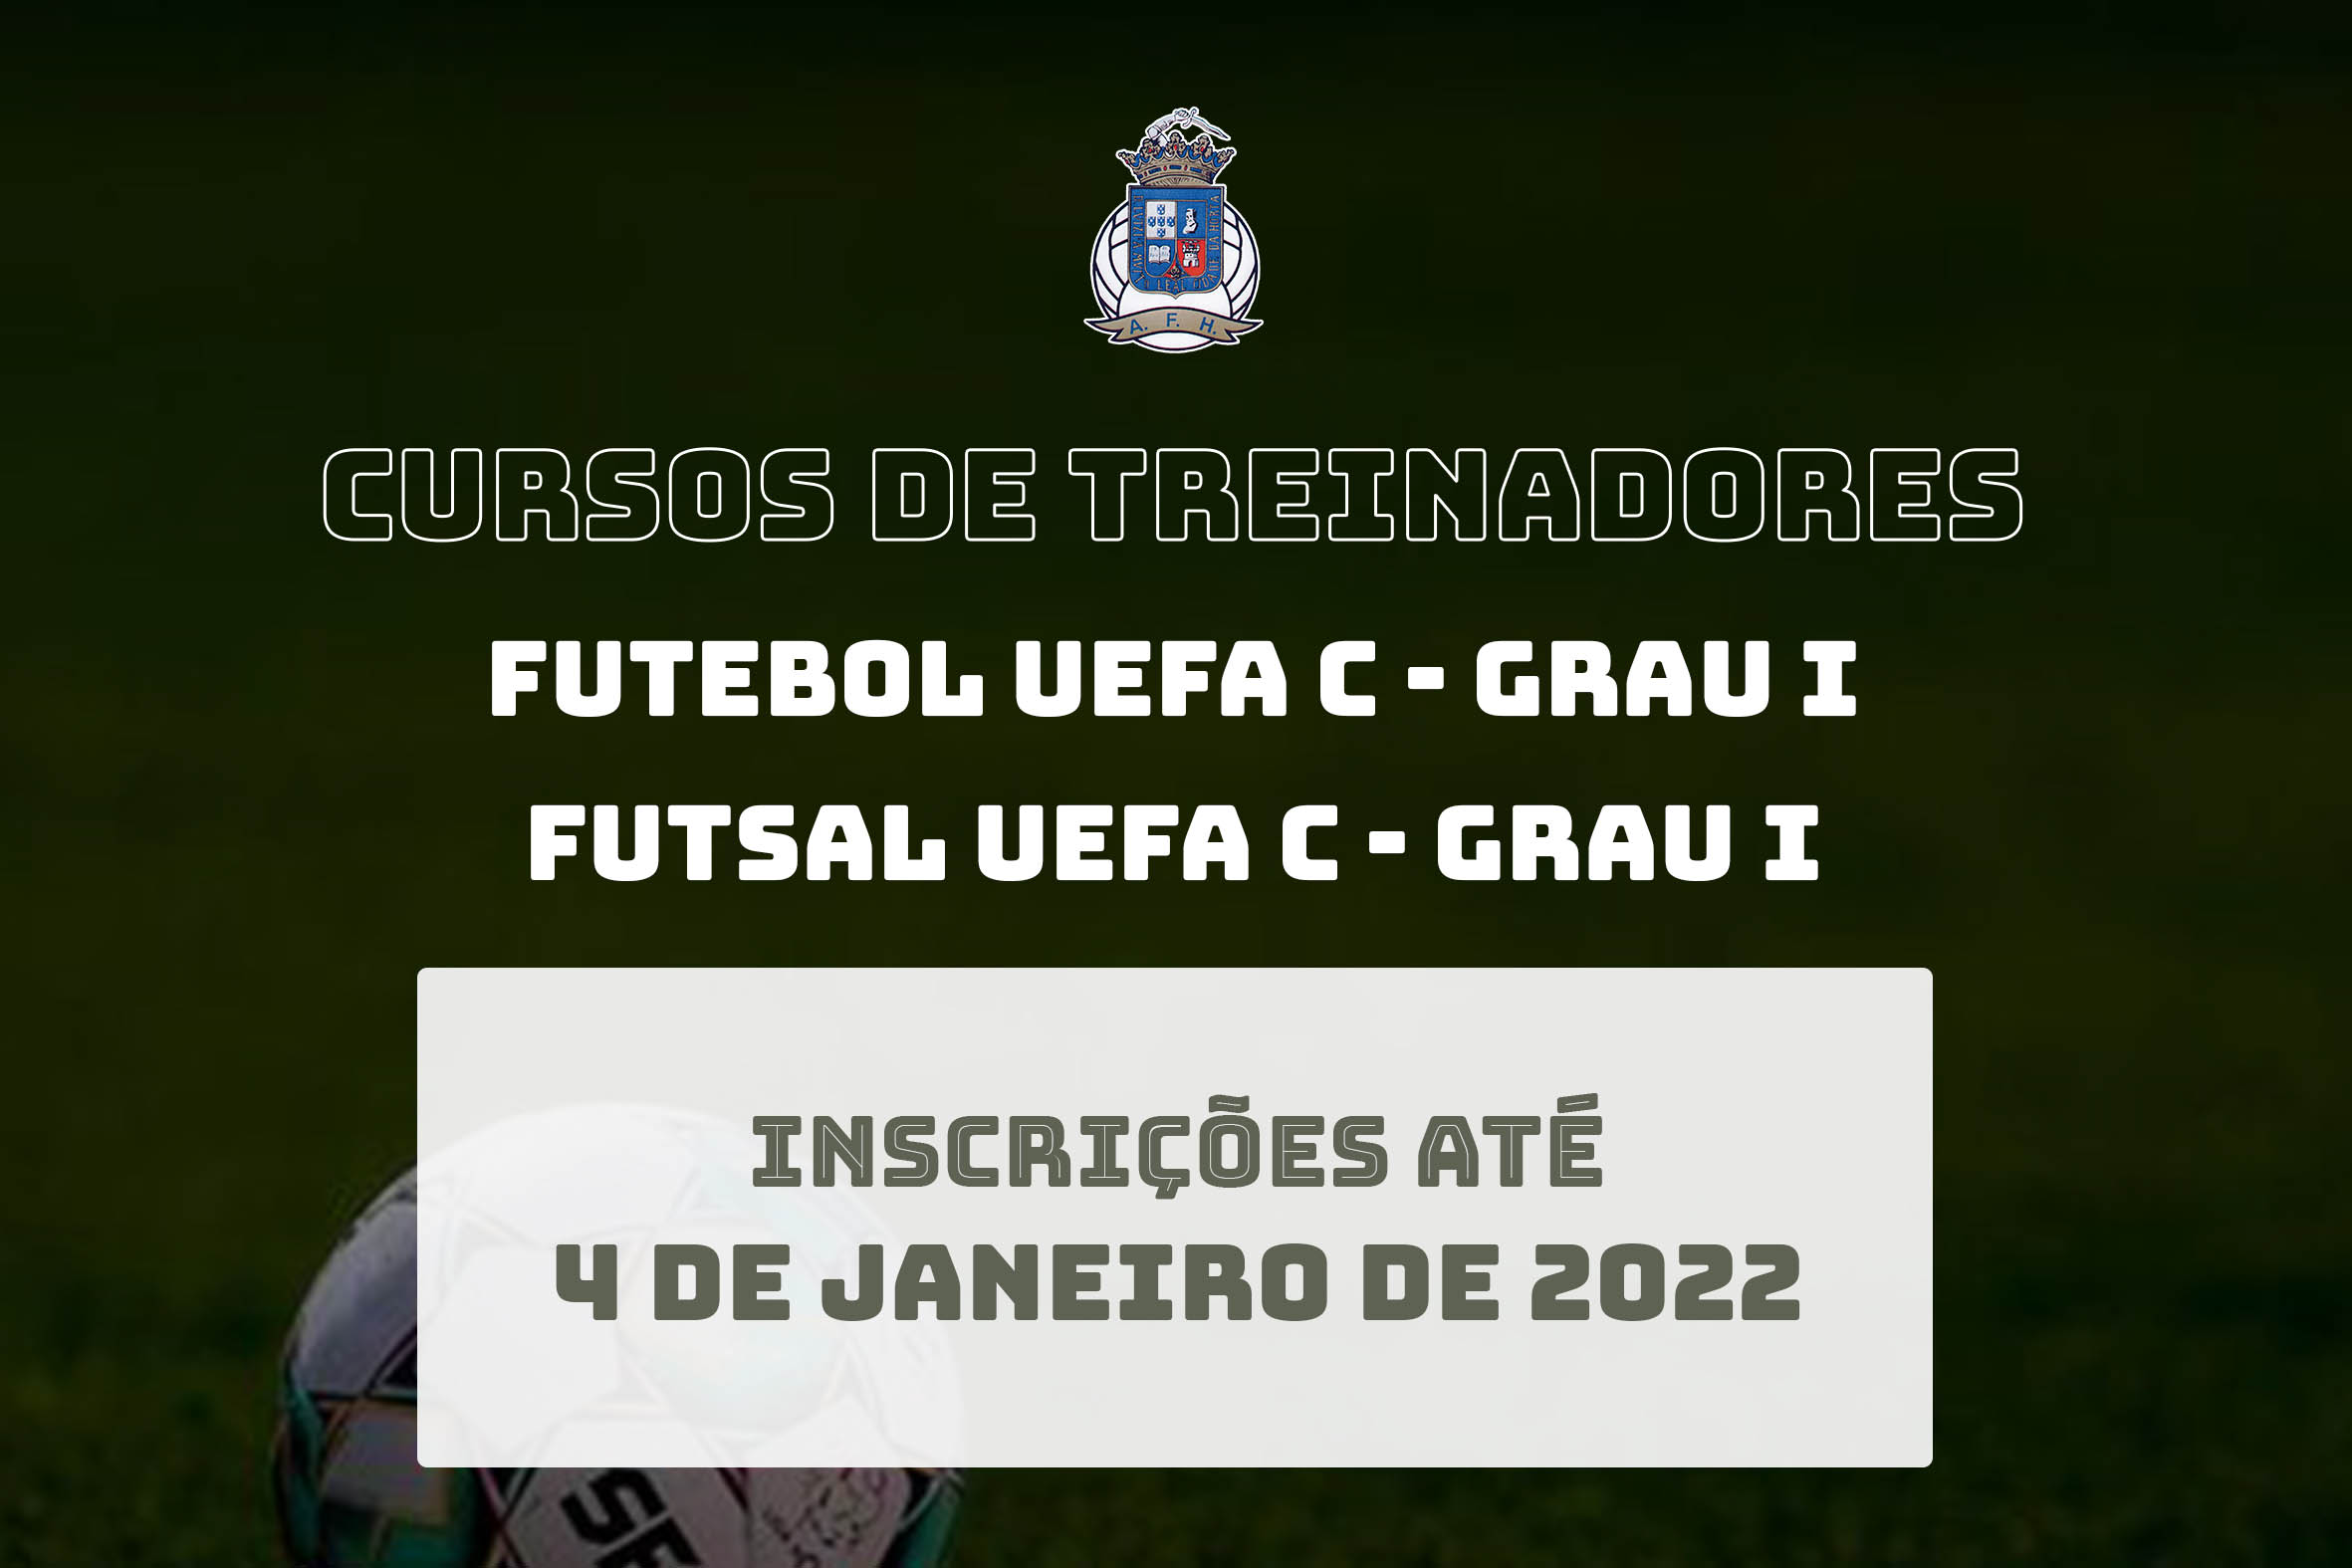 AFH promove Cursos de Treinador de Futebol e de Futsal – UEFA C/Grau I